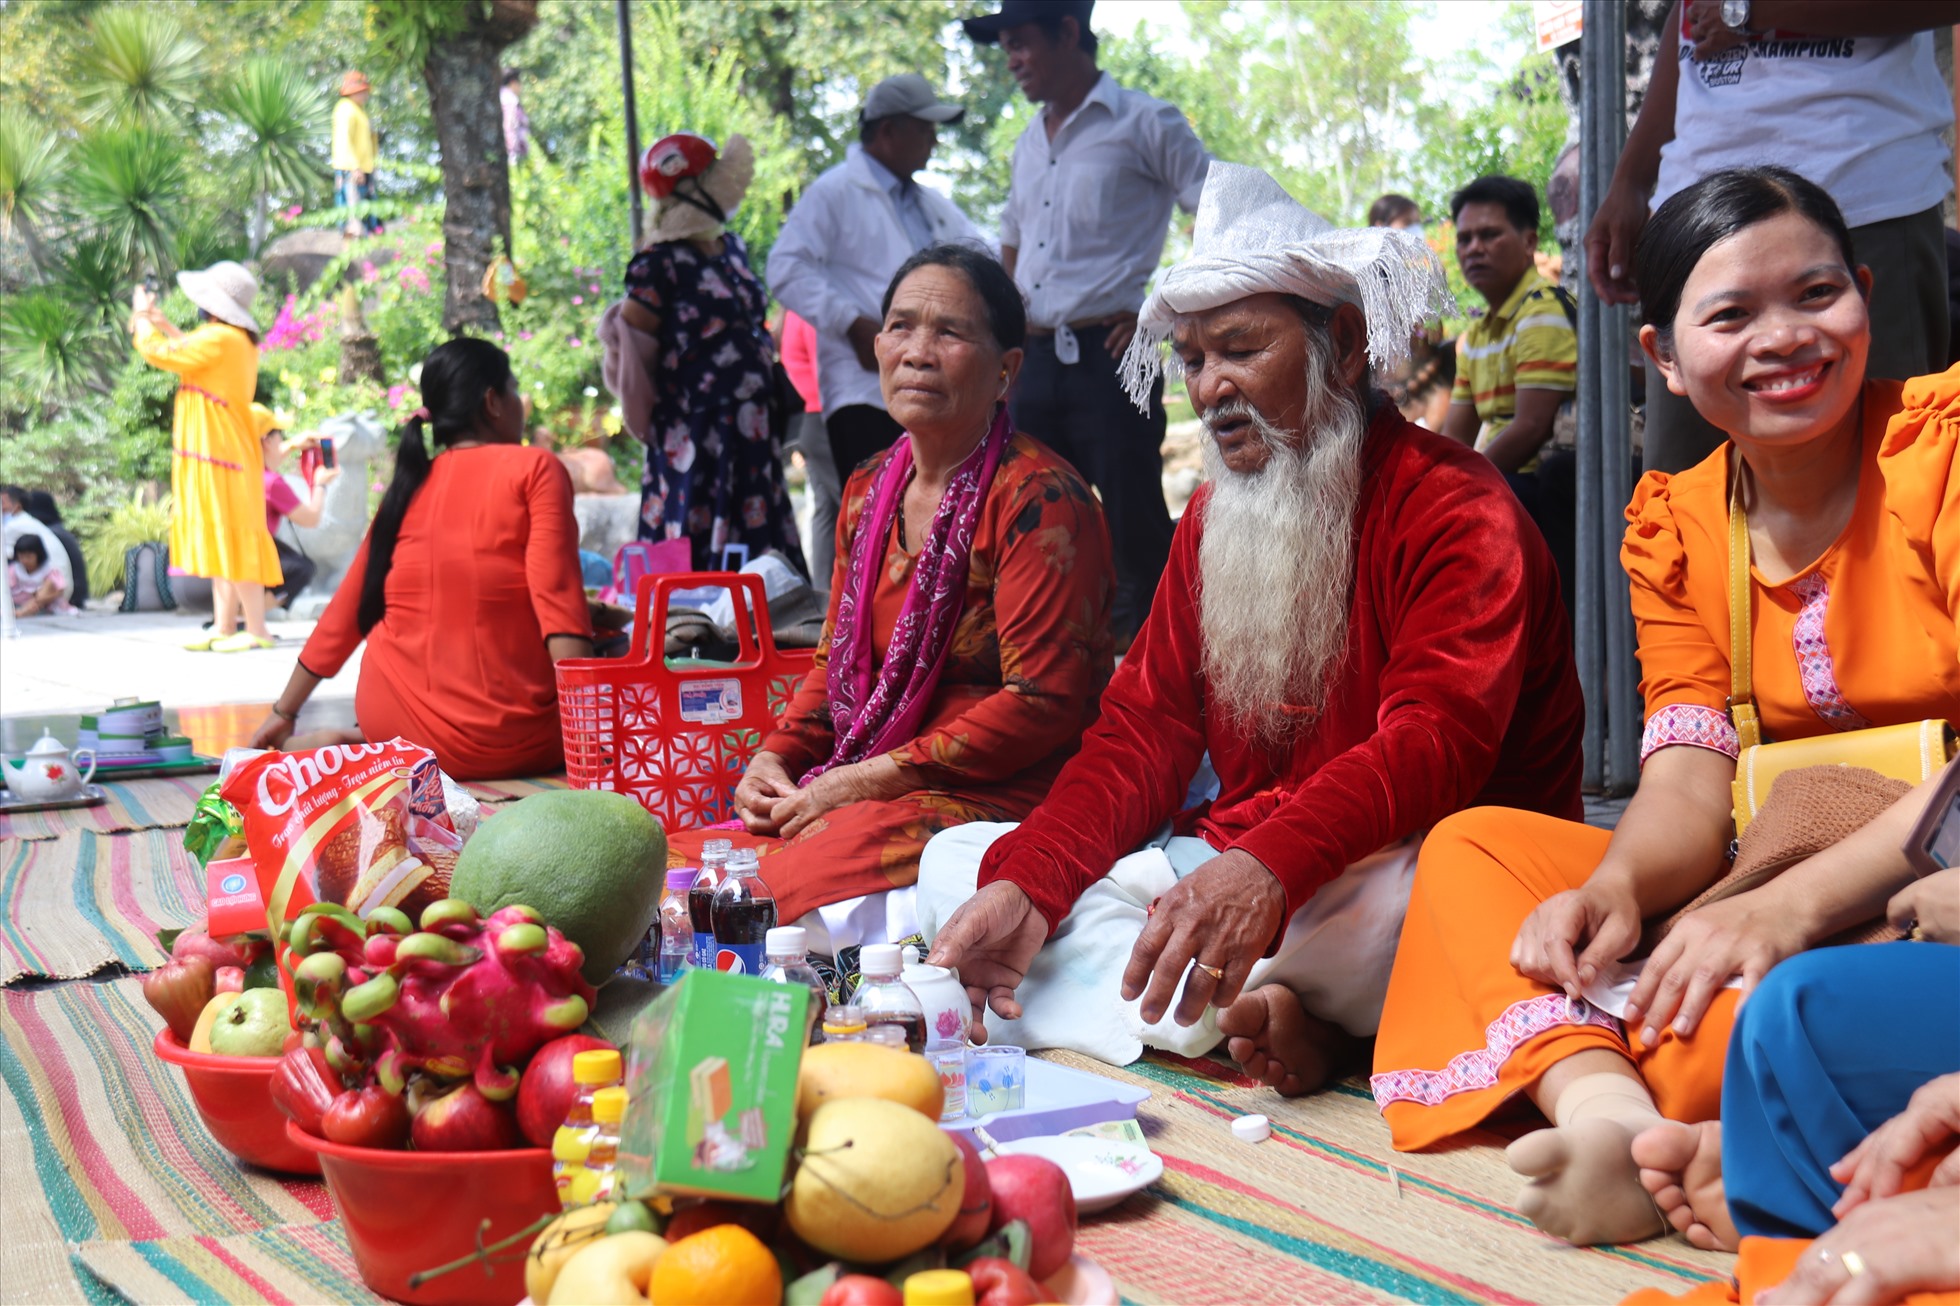 Với đồng bào Chăm lễ hội Tháp Bà Ponagar là dịp bắt đầu năm mới, người dân đến đây mang lễ vật đặc sắc để cầu con cháu đông vui, cầu làm ăn thuận lợi, cầu vụ mùa bội thu...